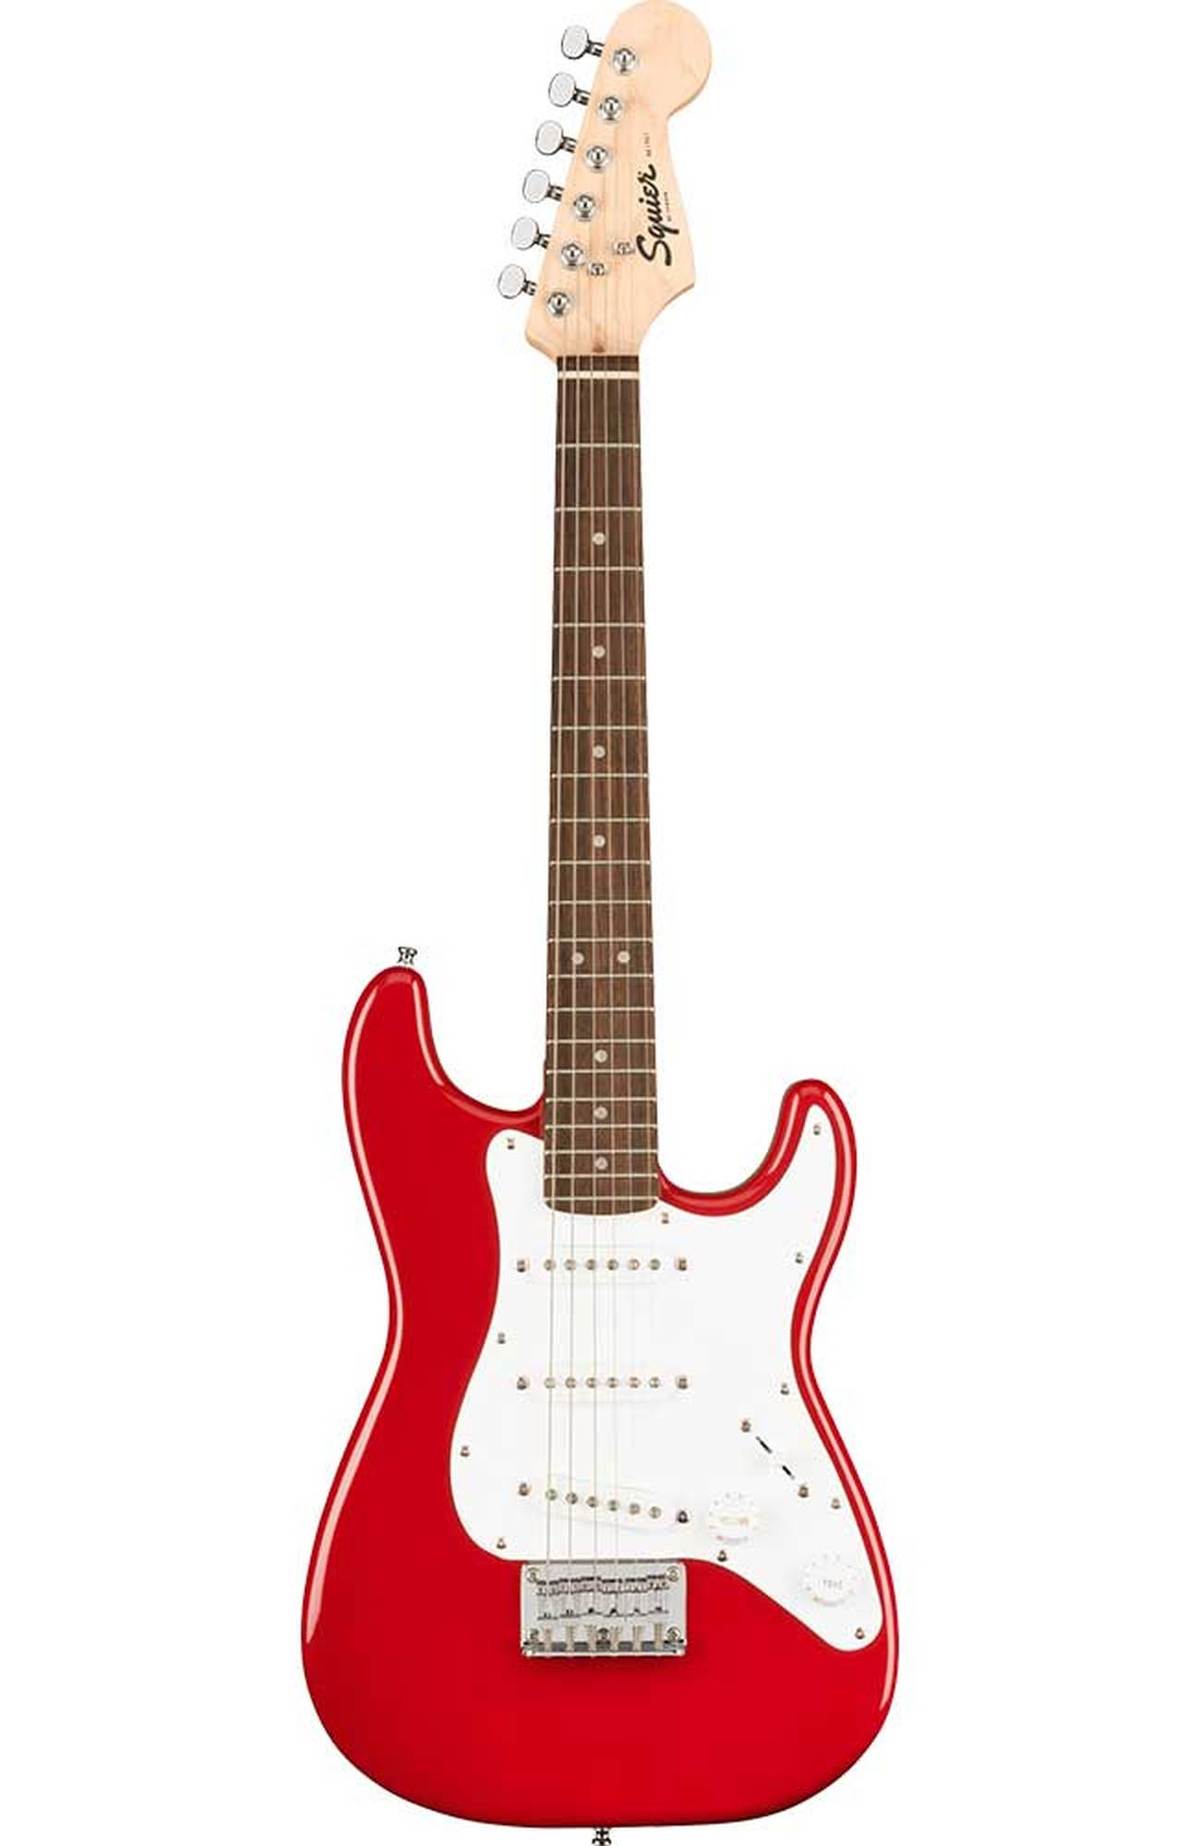 Mini Stratocaster Fenderを代表する”Stratocaster”のクラシカルなスタイリングトトーンをコンパクトにしたモデル。 ボディマテリアルは薄く軽量なポプラ、ネックは”C”シェイプを採用したメイプル、指板にはローレルを使用しています。ピックアップにはSquierシングルコイルピックアップを3基搭載。5ウェイスイッチングと合わせ、多彩なサウンドメイクが可能です。 Series：Mini Body Material：Poplar Body Finish：Gloss Polyurethane Neck：Maple, “C” Shape Neck Finish：Satin Urethane Fingerboard：Indian Laurel, 9.5” (241 mm) Frets：20, Narrow Tall Nut (Material/Width)：Synthetic Bone, 1.6” (40.6 mm) Scale Length：22.75” (578 mm) Pickguard：1-Ply White Pickups：Standard Single-Coil Strat&#174; (Bridge), Standard Single-Coil Strat&#174; (Middle), Standard Single-Coil Strat&#174; (Neck) 練習する際に必要なアンプなどもセットになって数量限定で絶賛販売中！ ◇詳しくはこちらをクリック 夜間の練習にも最適なヘッドホンアンプセットも数量限定で絶賛販売中！ ◇詳しくはこちらをクリック ※商品画像はサンプルです。 ※商品の汚れや状態はお問い合わせ下さい。 ※掲載の商品は店頭や他のECサイトでも並行して販売しております。在庫情報の更新には最大限の努力をしておりますが、ご注文が完了しましても売り切れでご用意できない場合がございます。 その際はご注文をキャンセルさせていただきますので、予めご了承くださいませ。 また、お取り寄せ商品の場合、生産完了などの理由でご用意できない場合がございます。 ※お届け先が北海道や沖縄、その他離島の場合、「送料無料」と表記の商品であっても別途中継料や送料を頂戴いたします。その際は改めてご連絡を差し上げますのでご了承ください。　